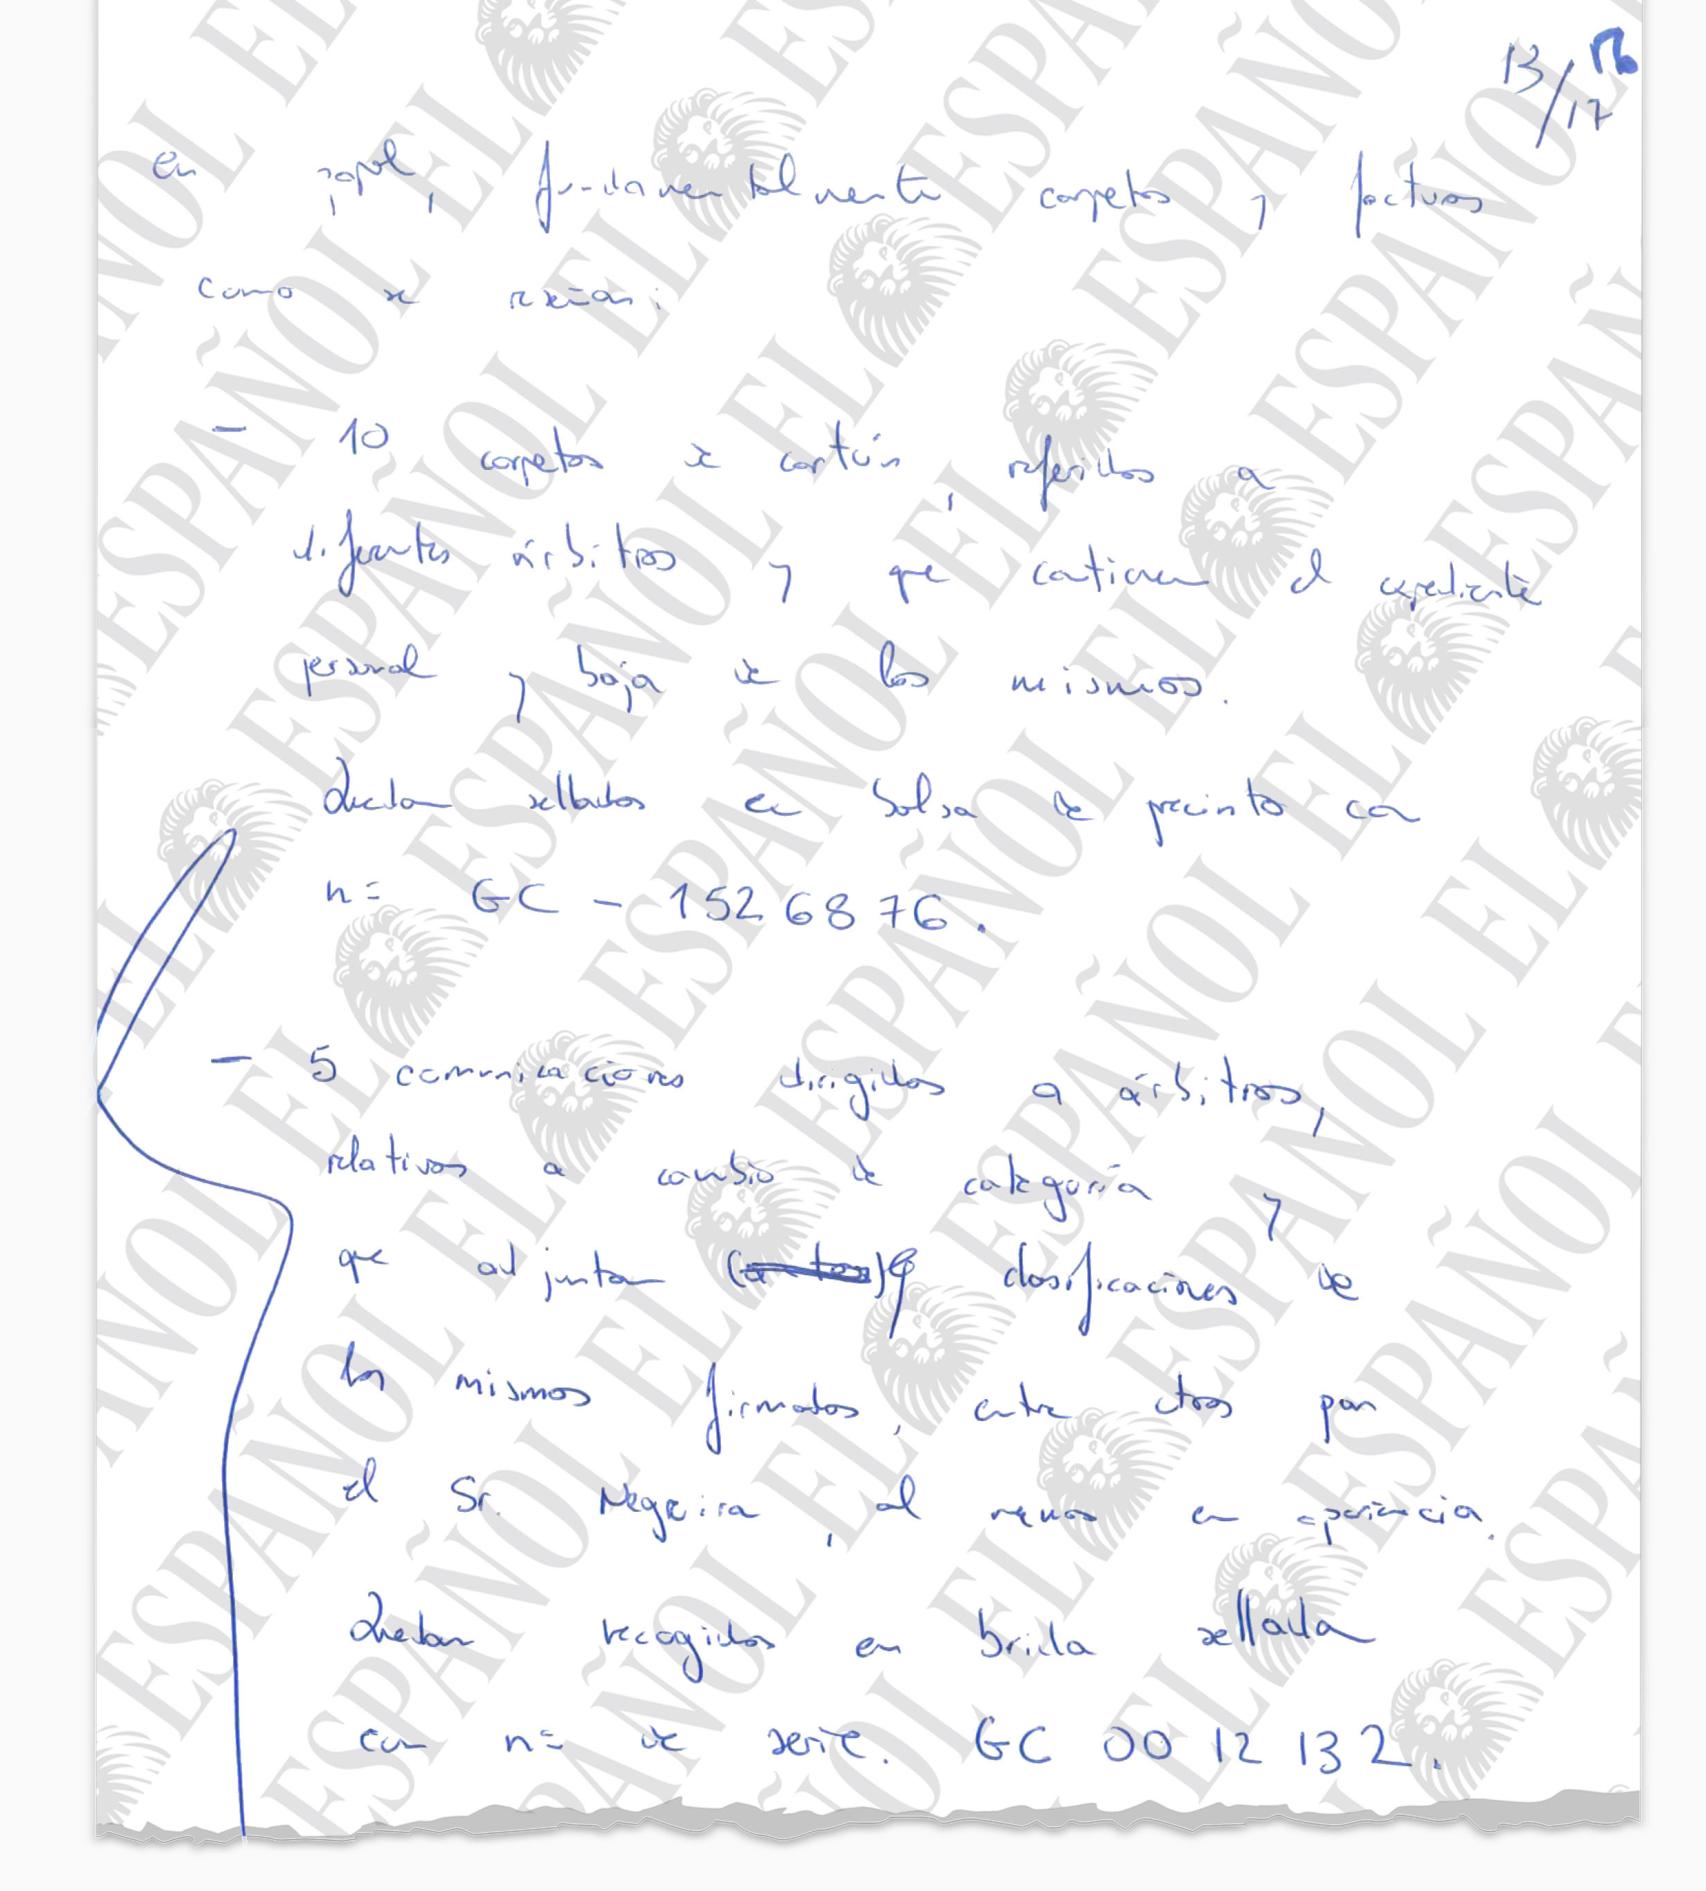 Una de las páginas manuscritas por la Guardia Civil durante el registro en la sede del CTA